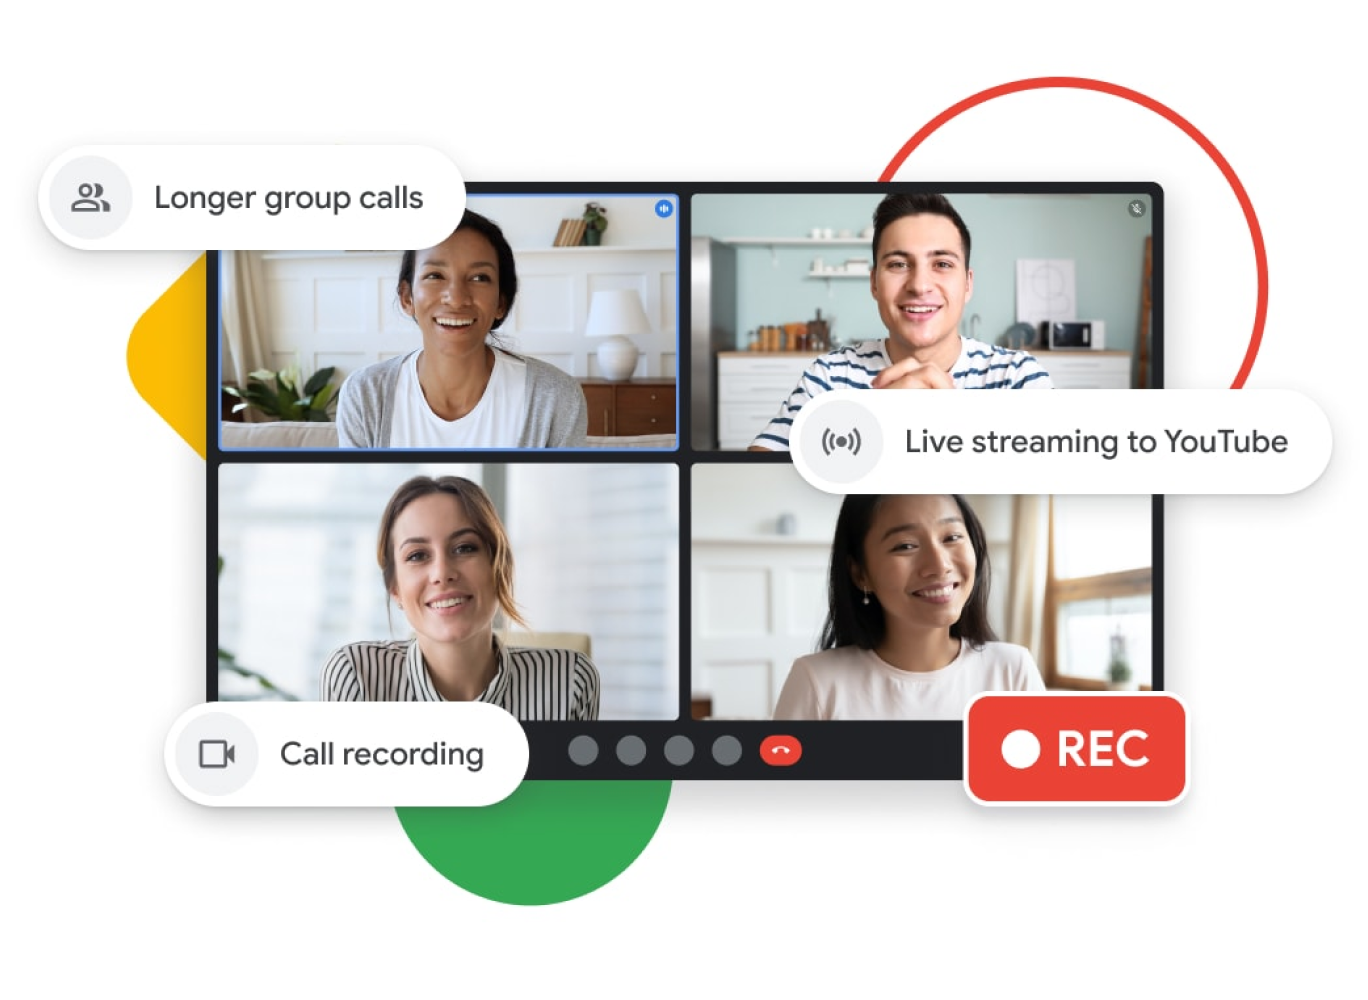 Ilustración gráfica de una llamada de grupo de Google Meet que puede ser más larga, con emisiones en directo en YouTube y funciones de grabación de llamada.